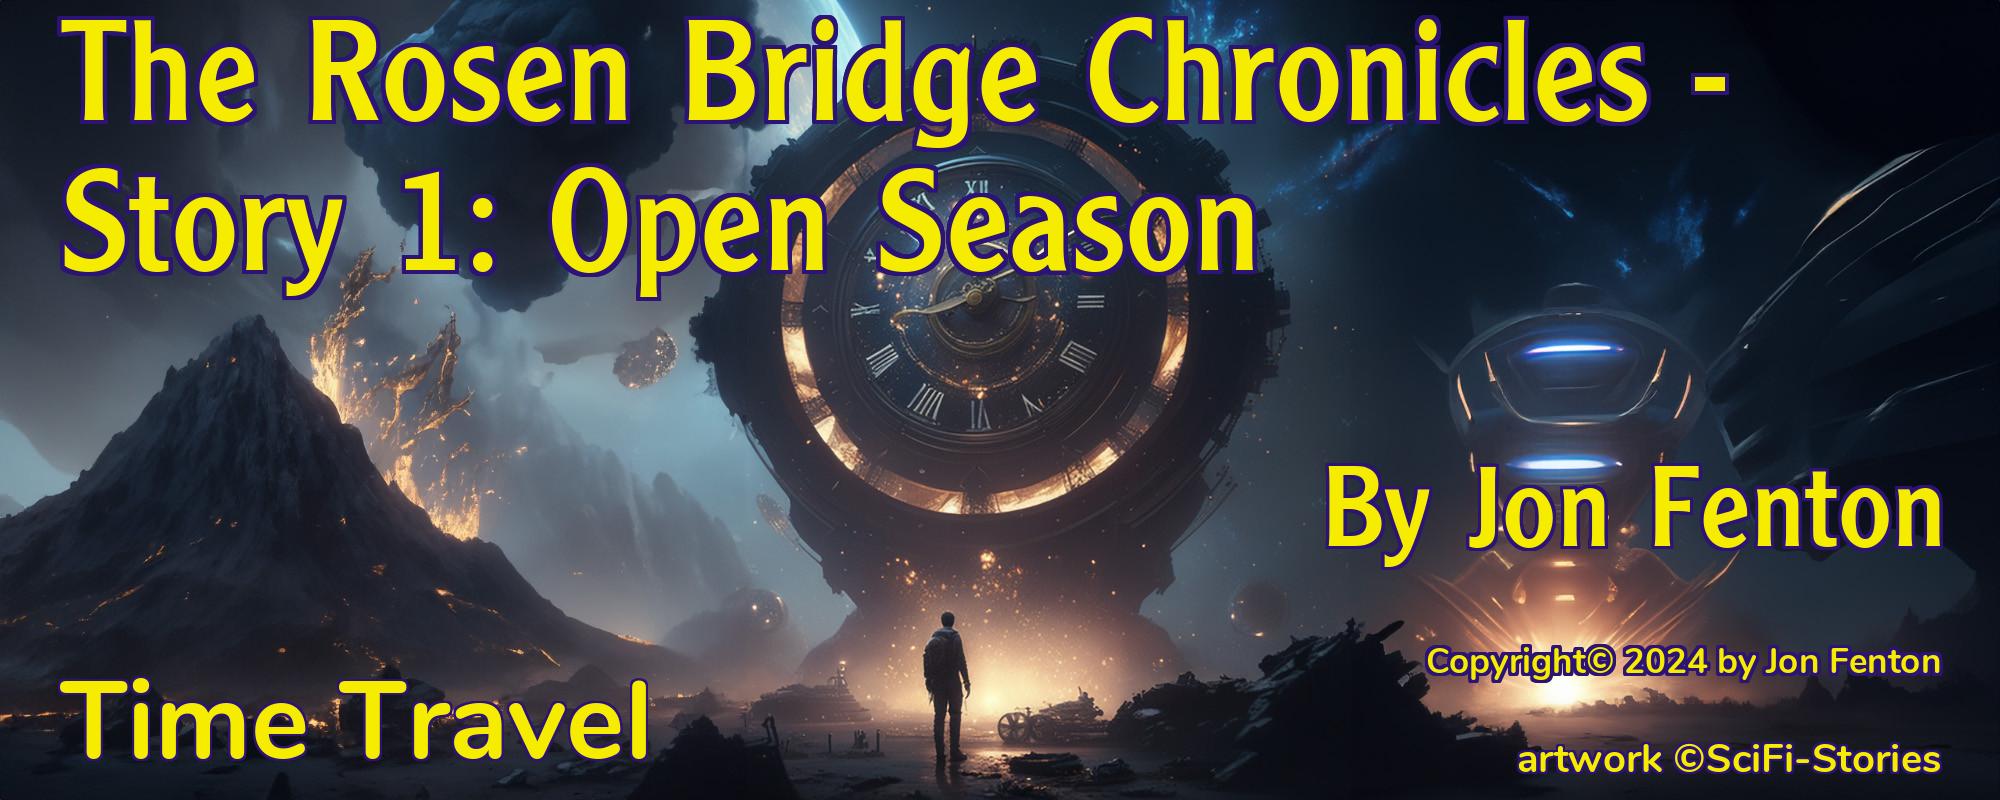 The Rosen Bridge Chronicles - Story 1: Open Season - Cover